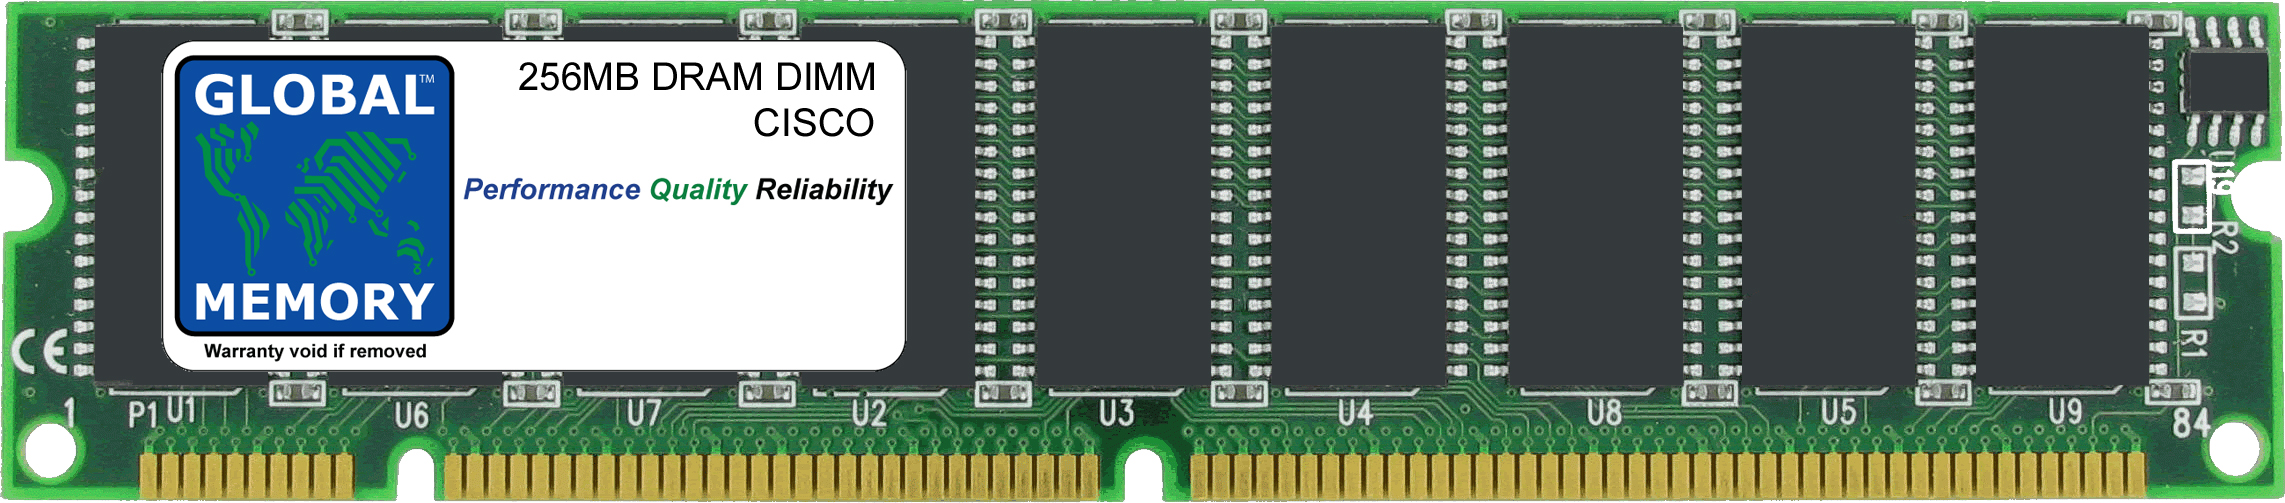 256MB DRAM DIMM MEMORY RAM FOR CISCO MEDIA CONVERGENCE SERVER MCS-7820 / MCS-7822 (MEM-782X-256-100) - Click Image to Close